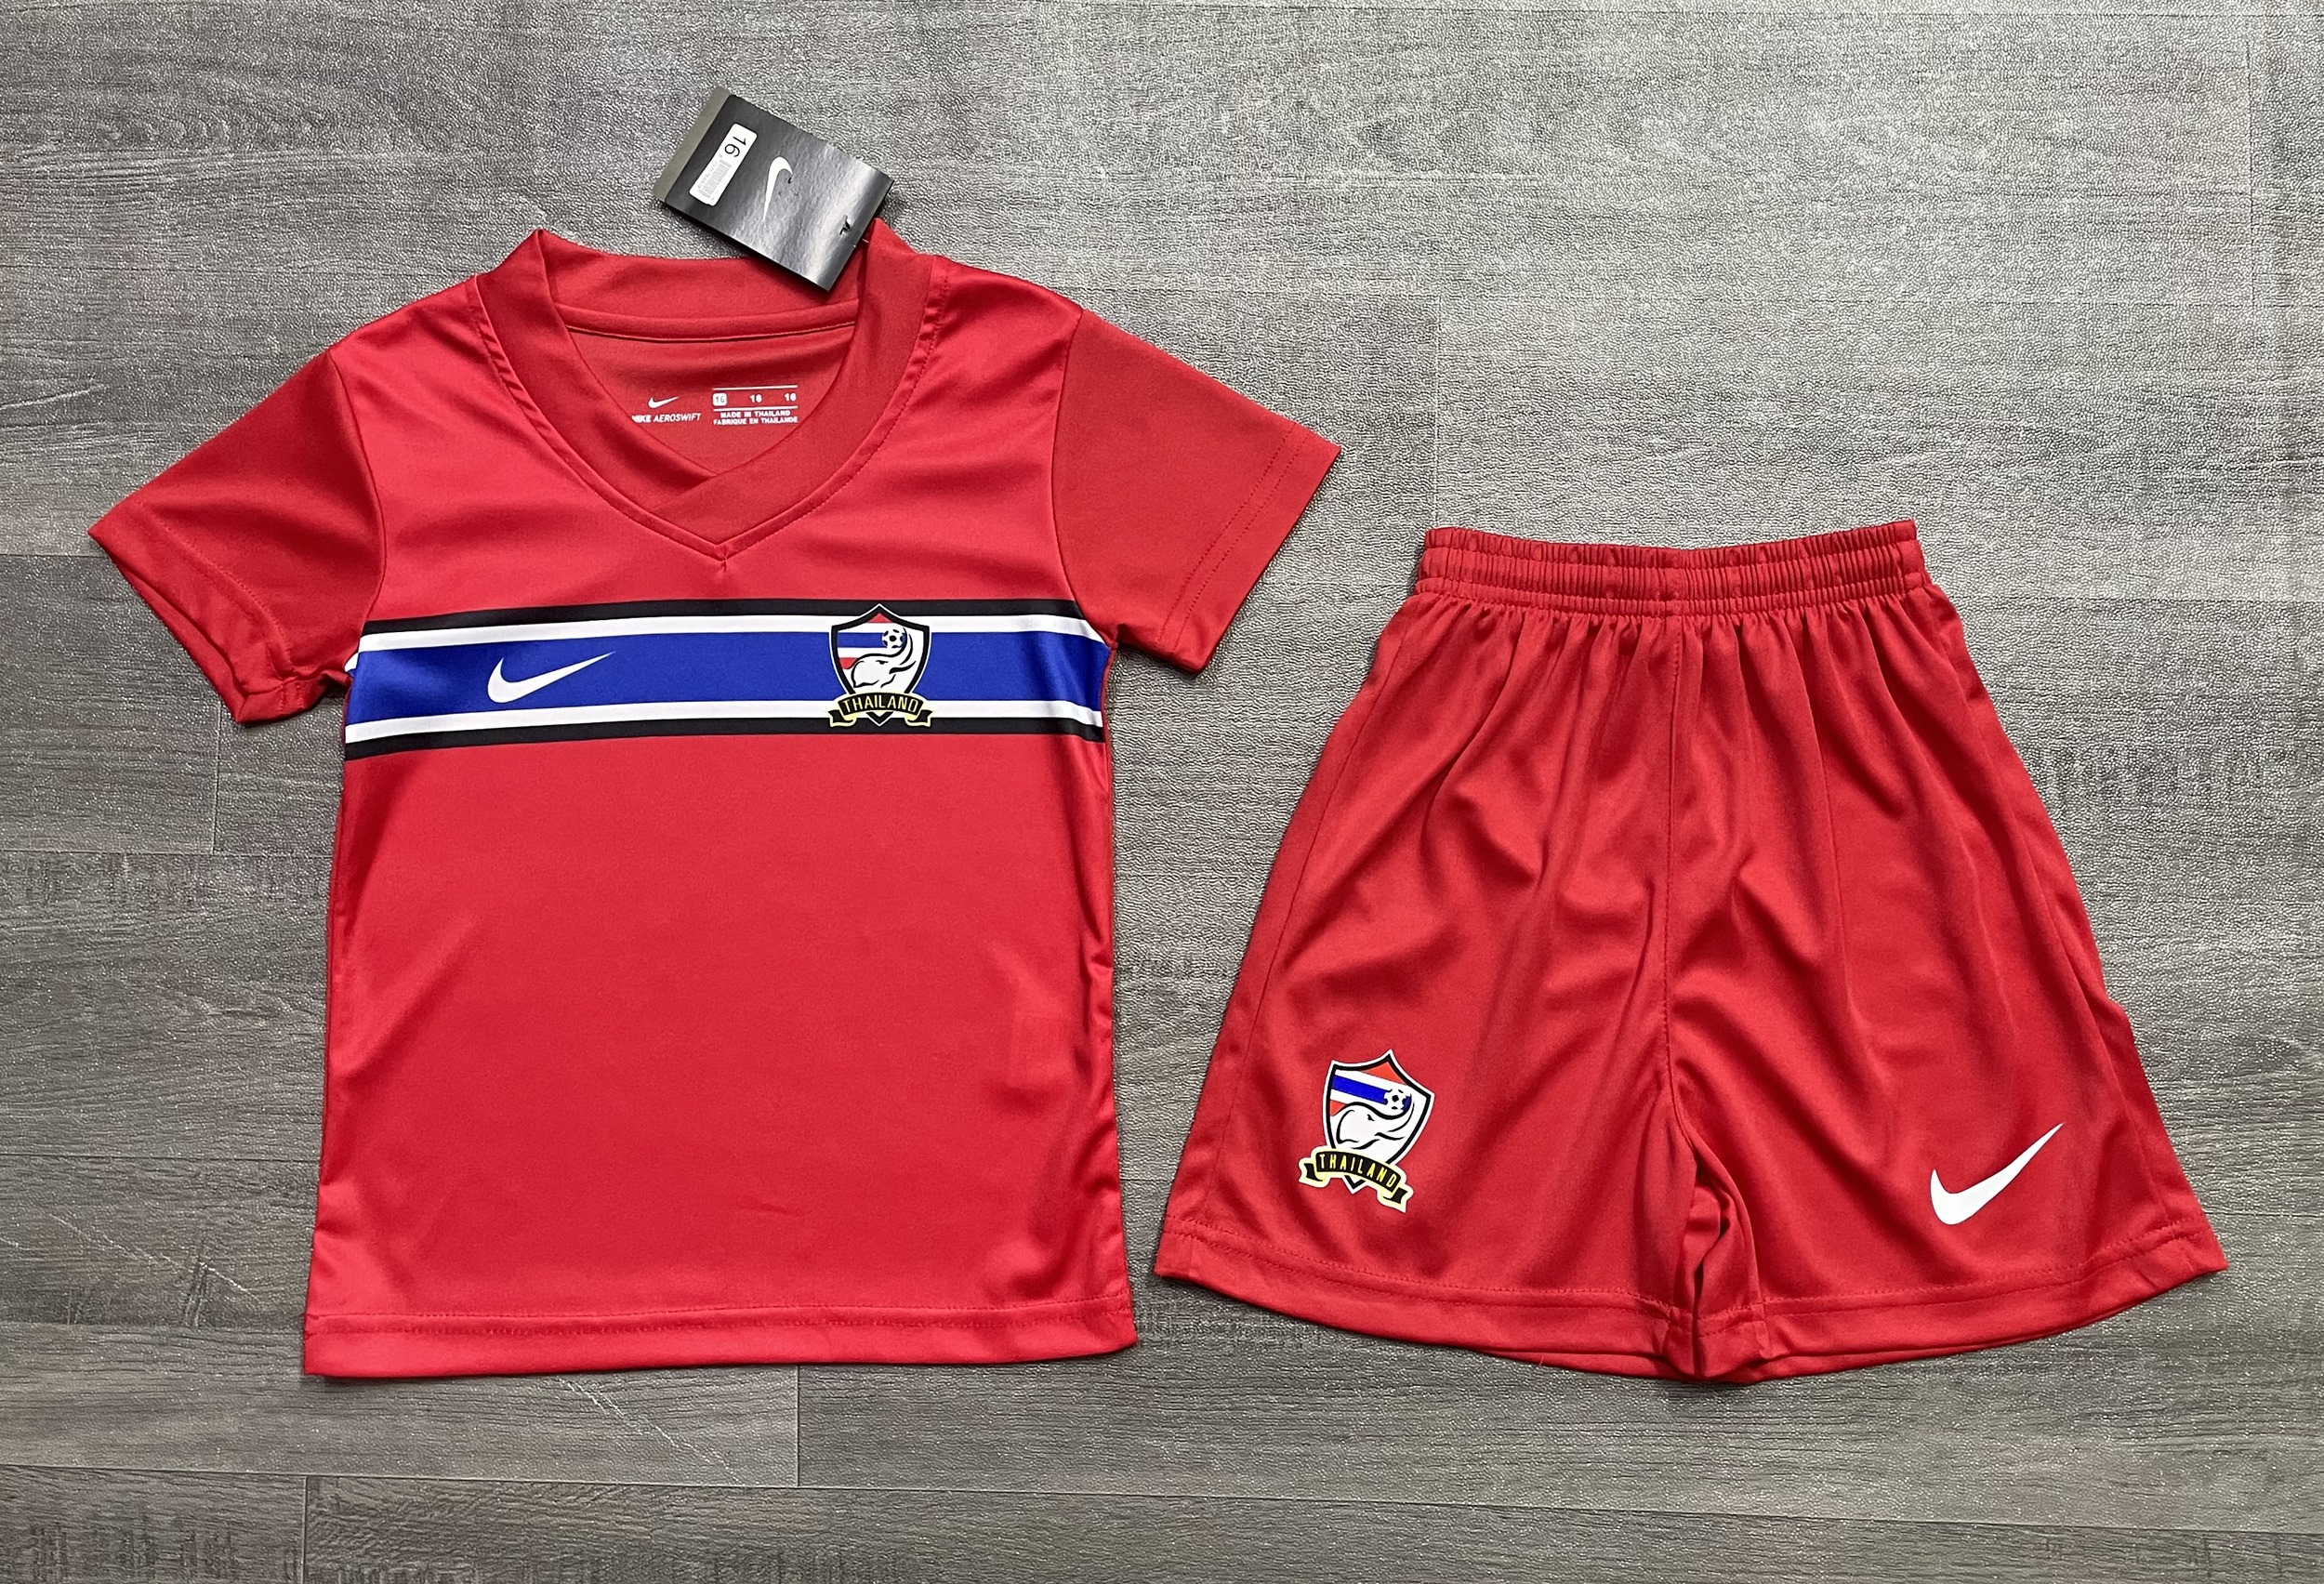 เสื้อฟุตบอลเด็ก ชุดกีฬาเด็ก เสื้อบอลเด็ก เสื้อบอลเด็กผู้ชาย  เสื้อออกกำลังกายเด็ก ทีม Chang Thailand Red